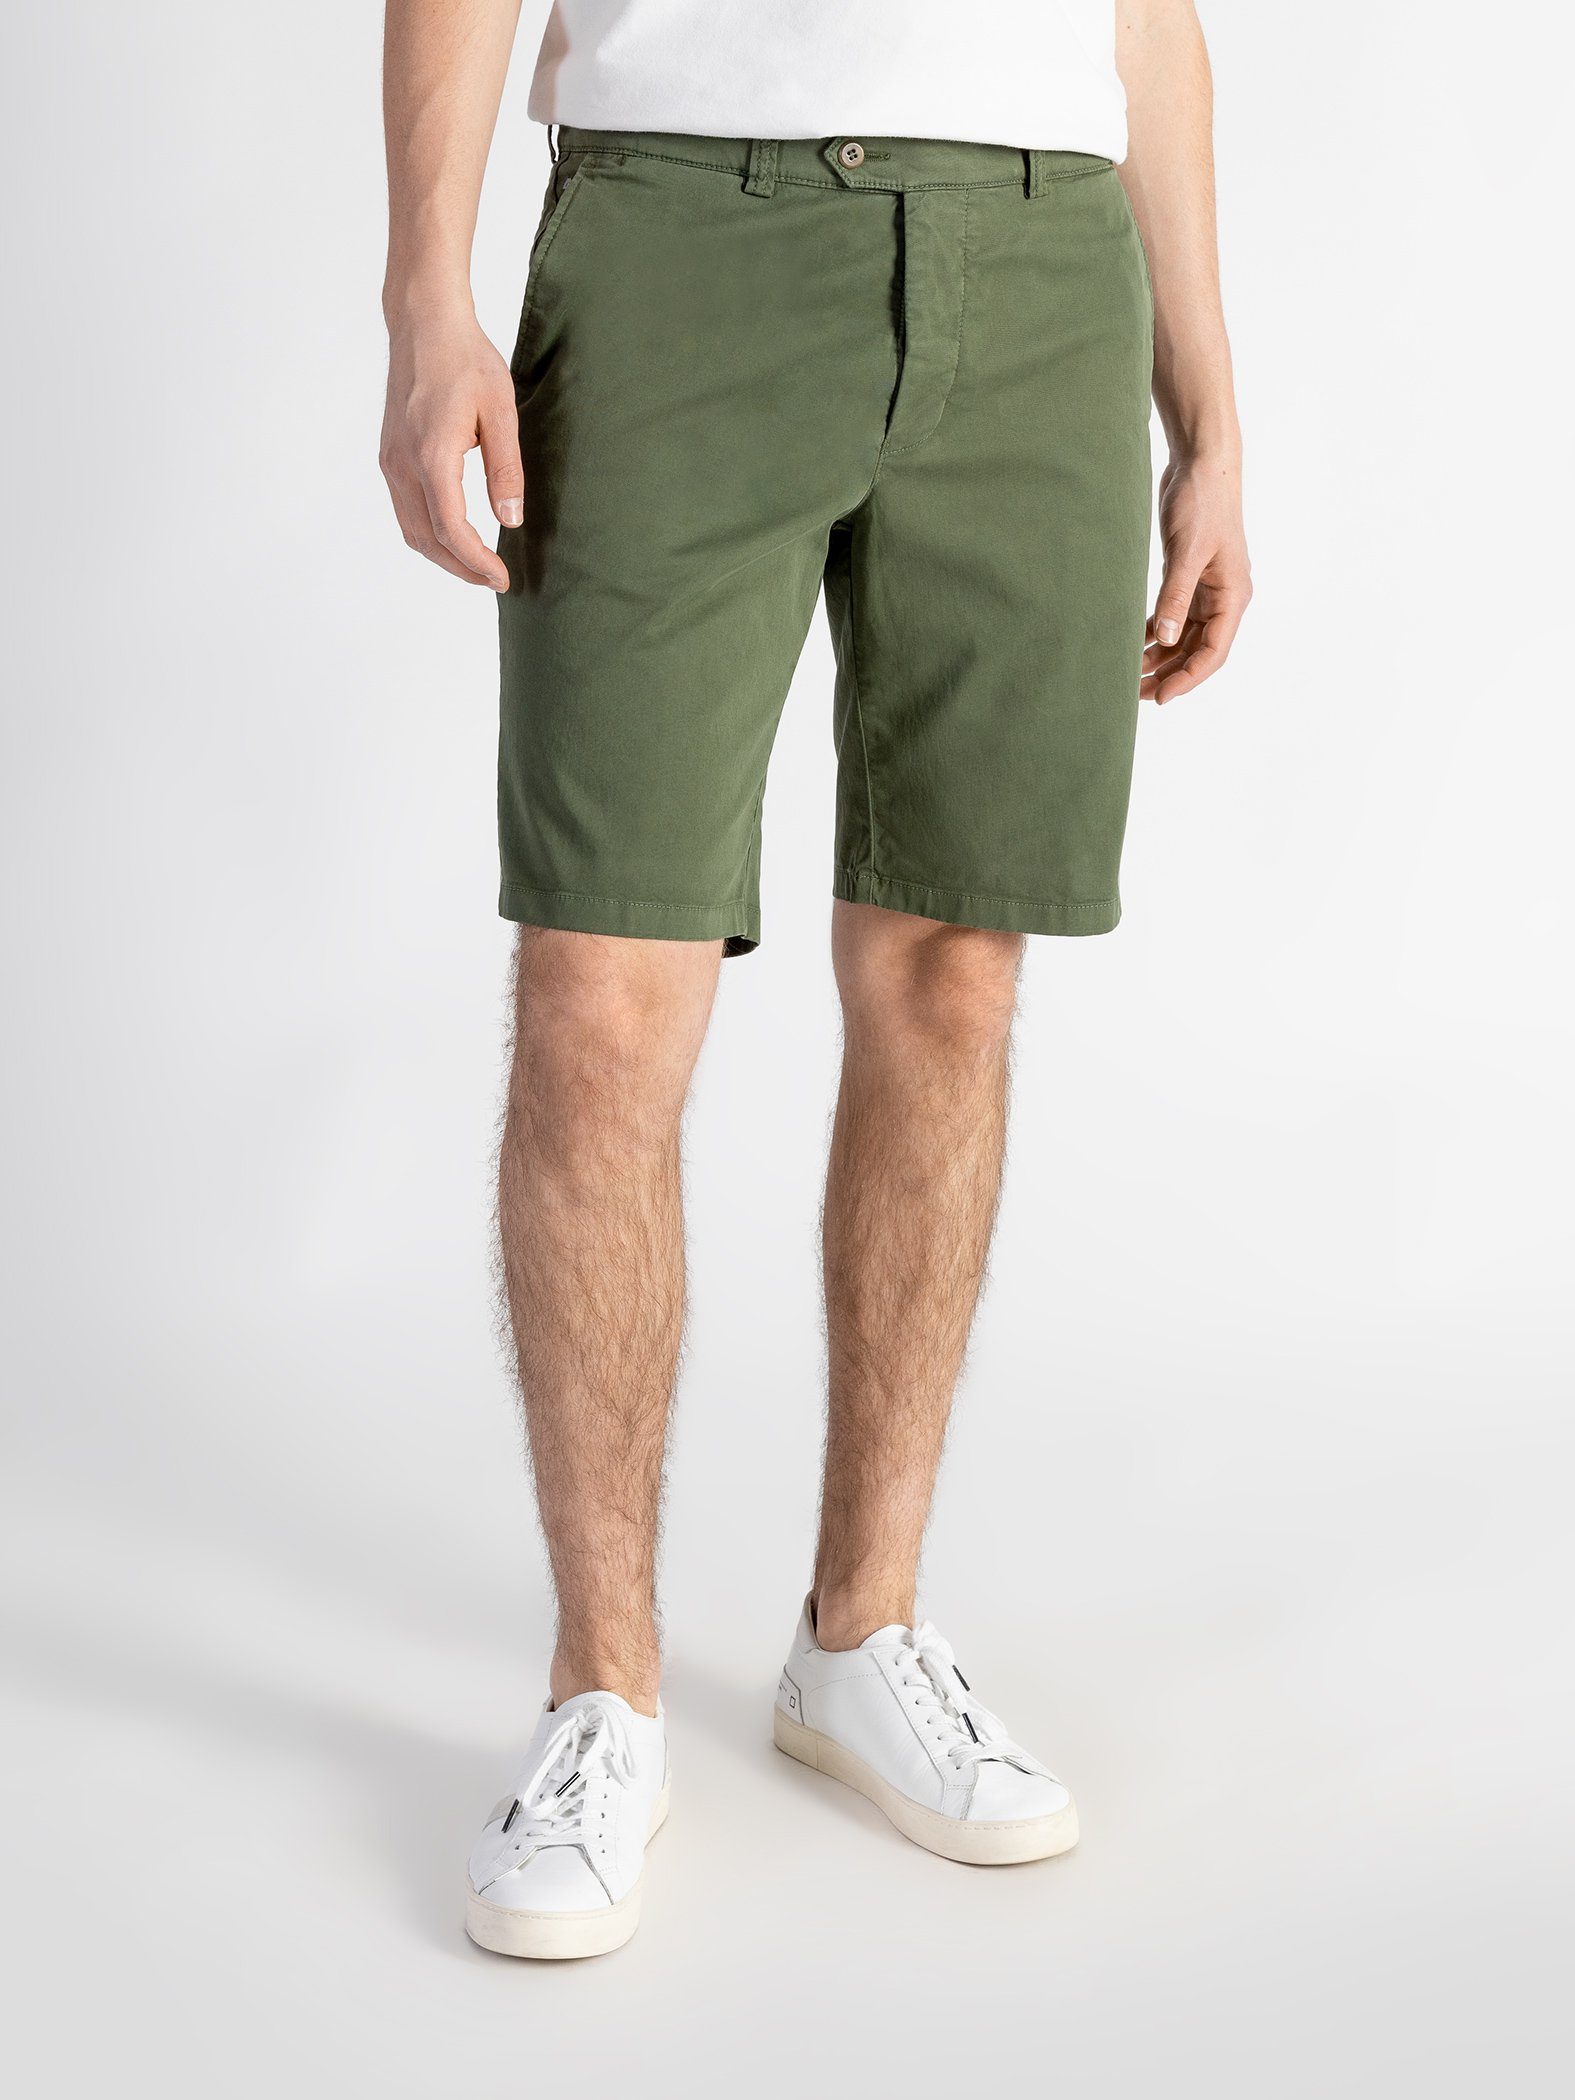 Grün Bund, TwoMates GOTS-zertifiziert Shorts Farbauswahl, Shorts mit elastischem